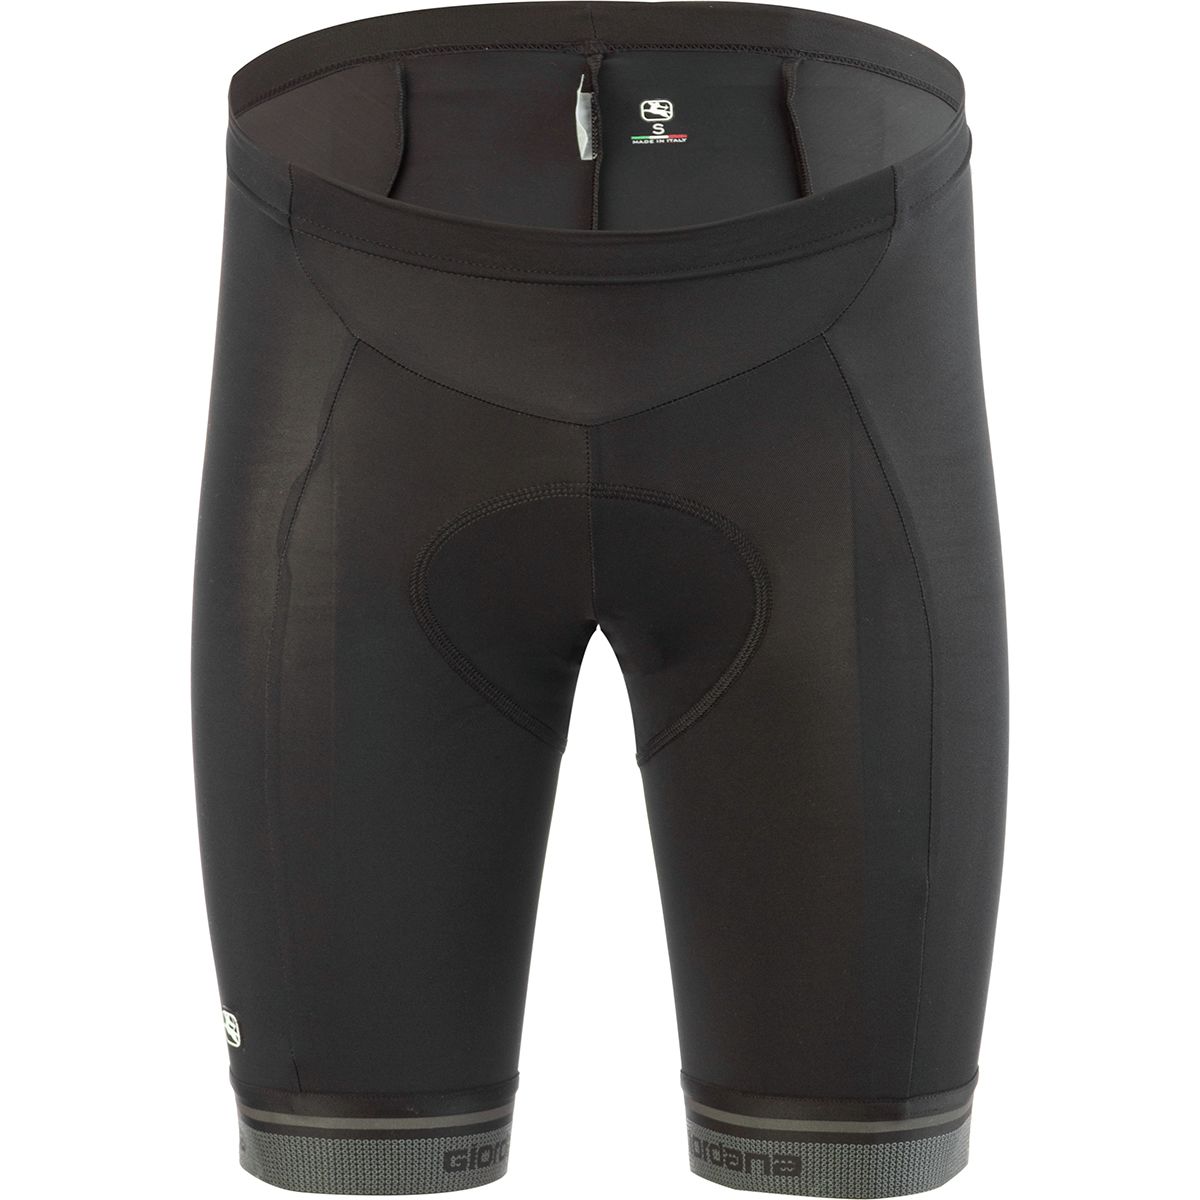 Giordana Fusion Shorts - Men's